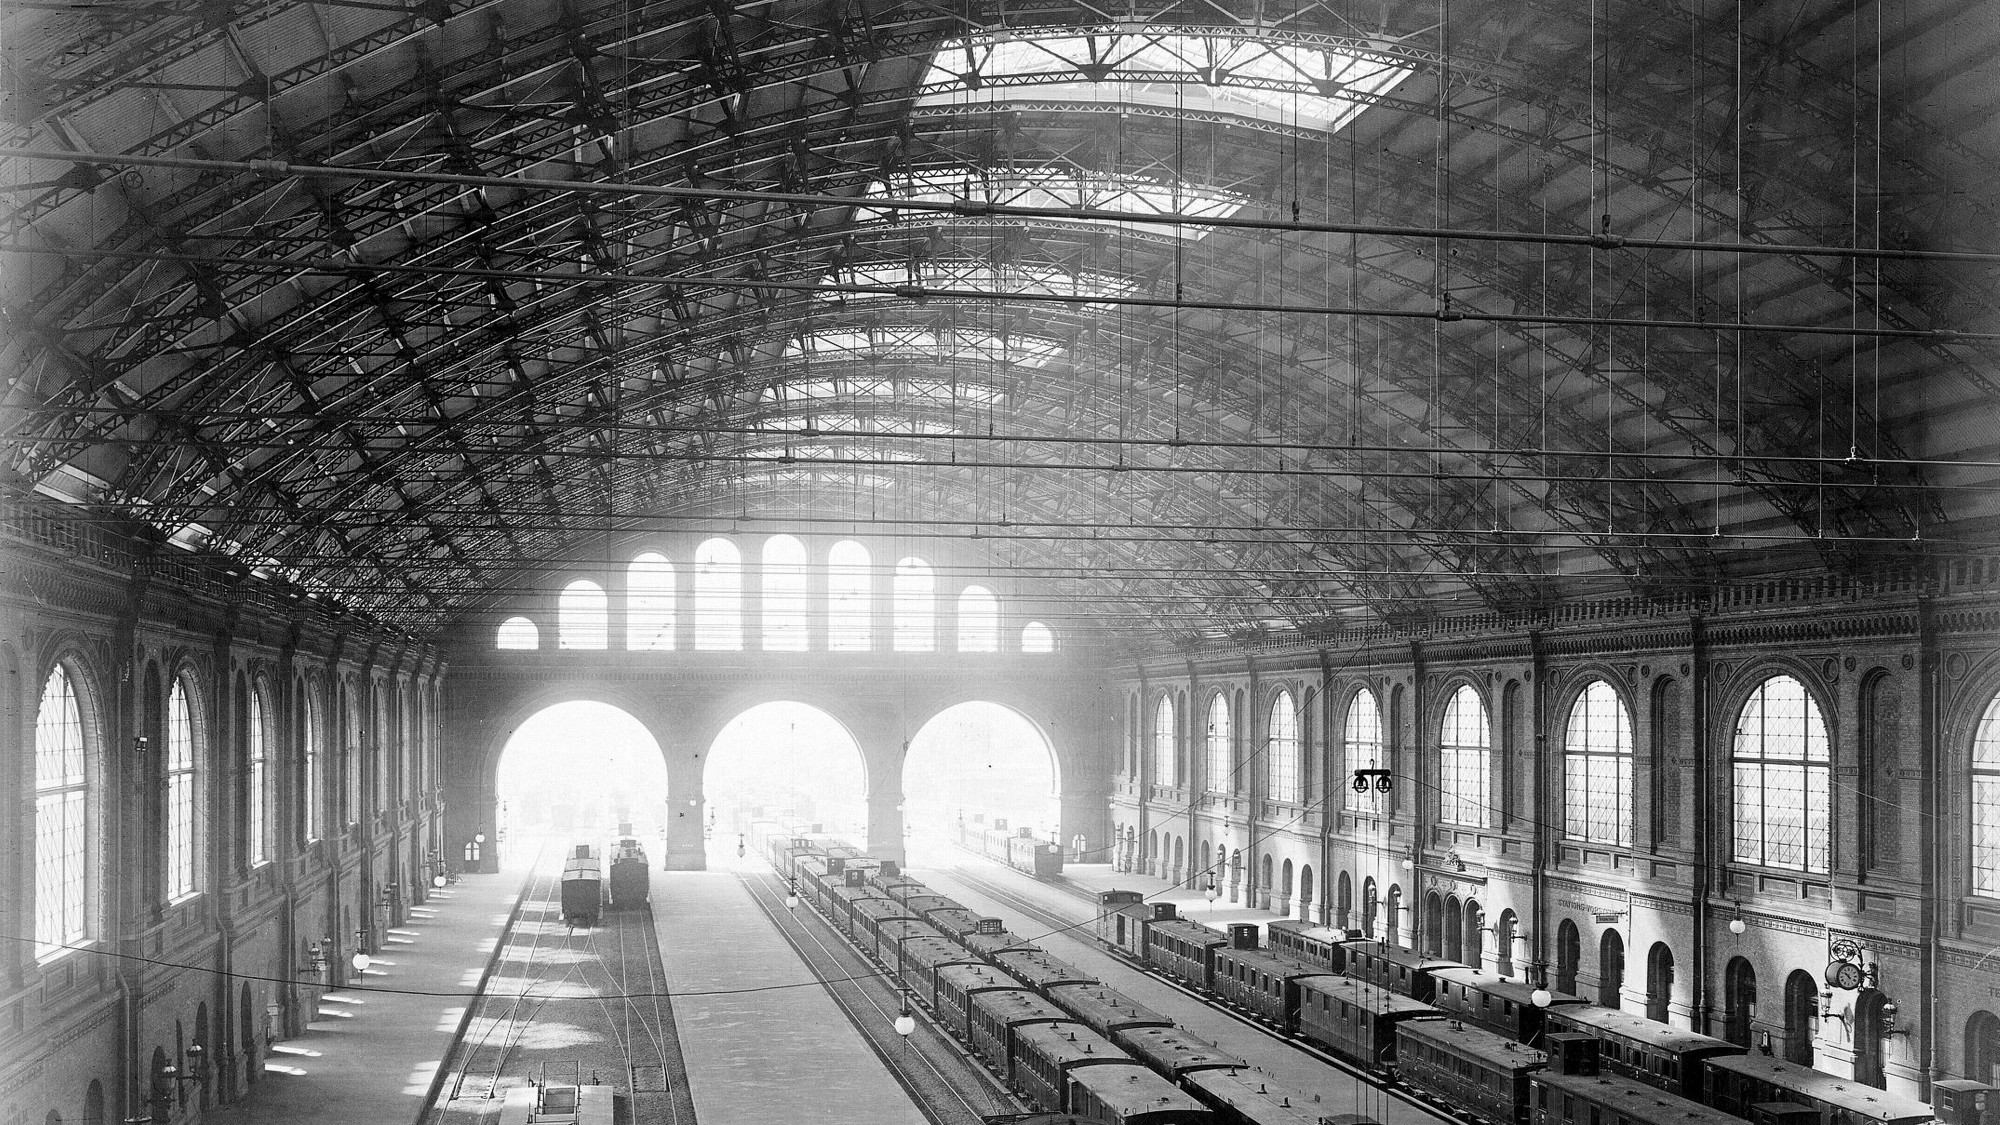 Gleishalle des Anhalter Bahnhofs um 1880